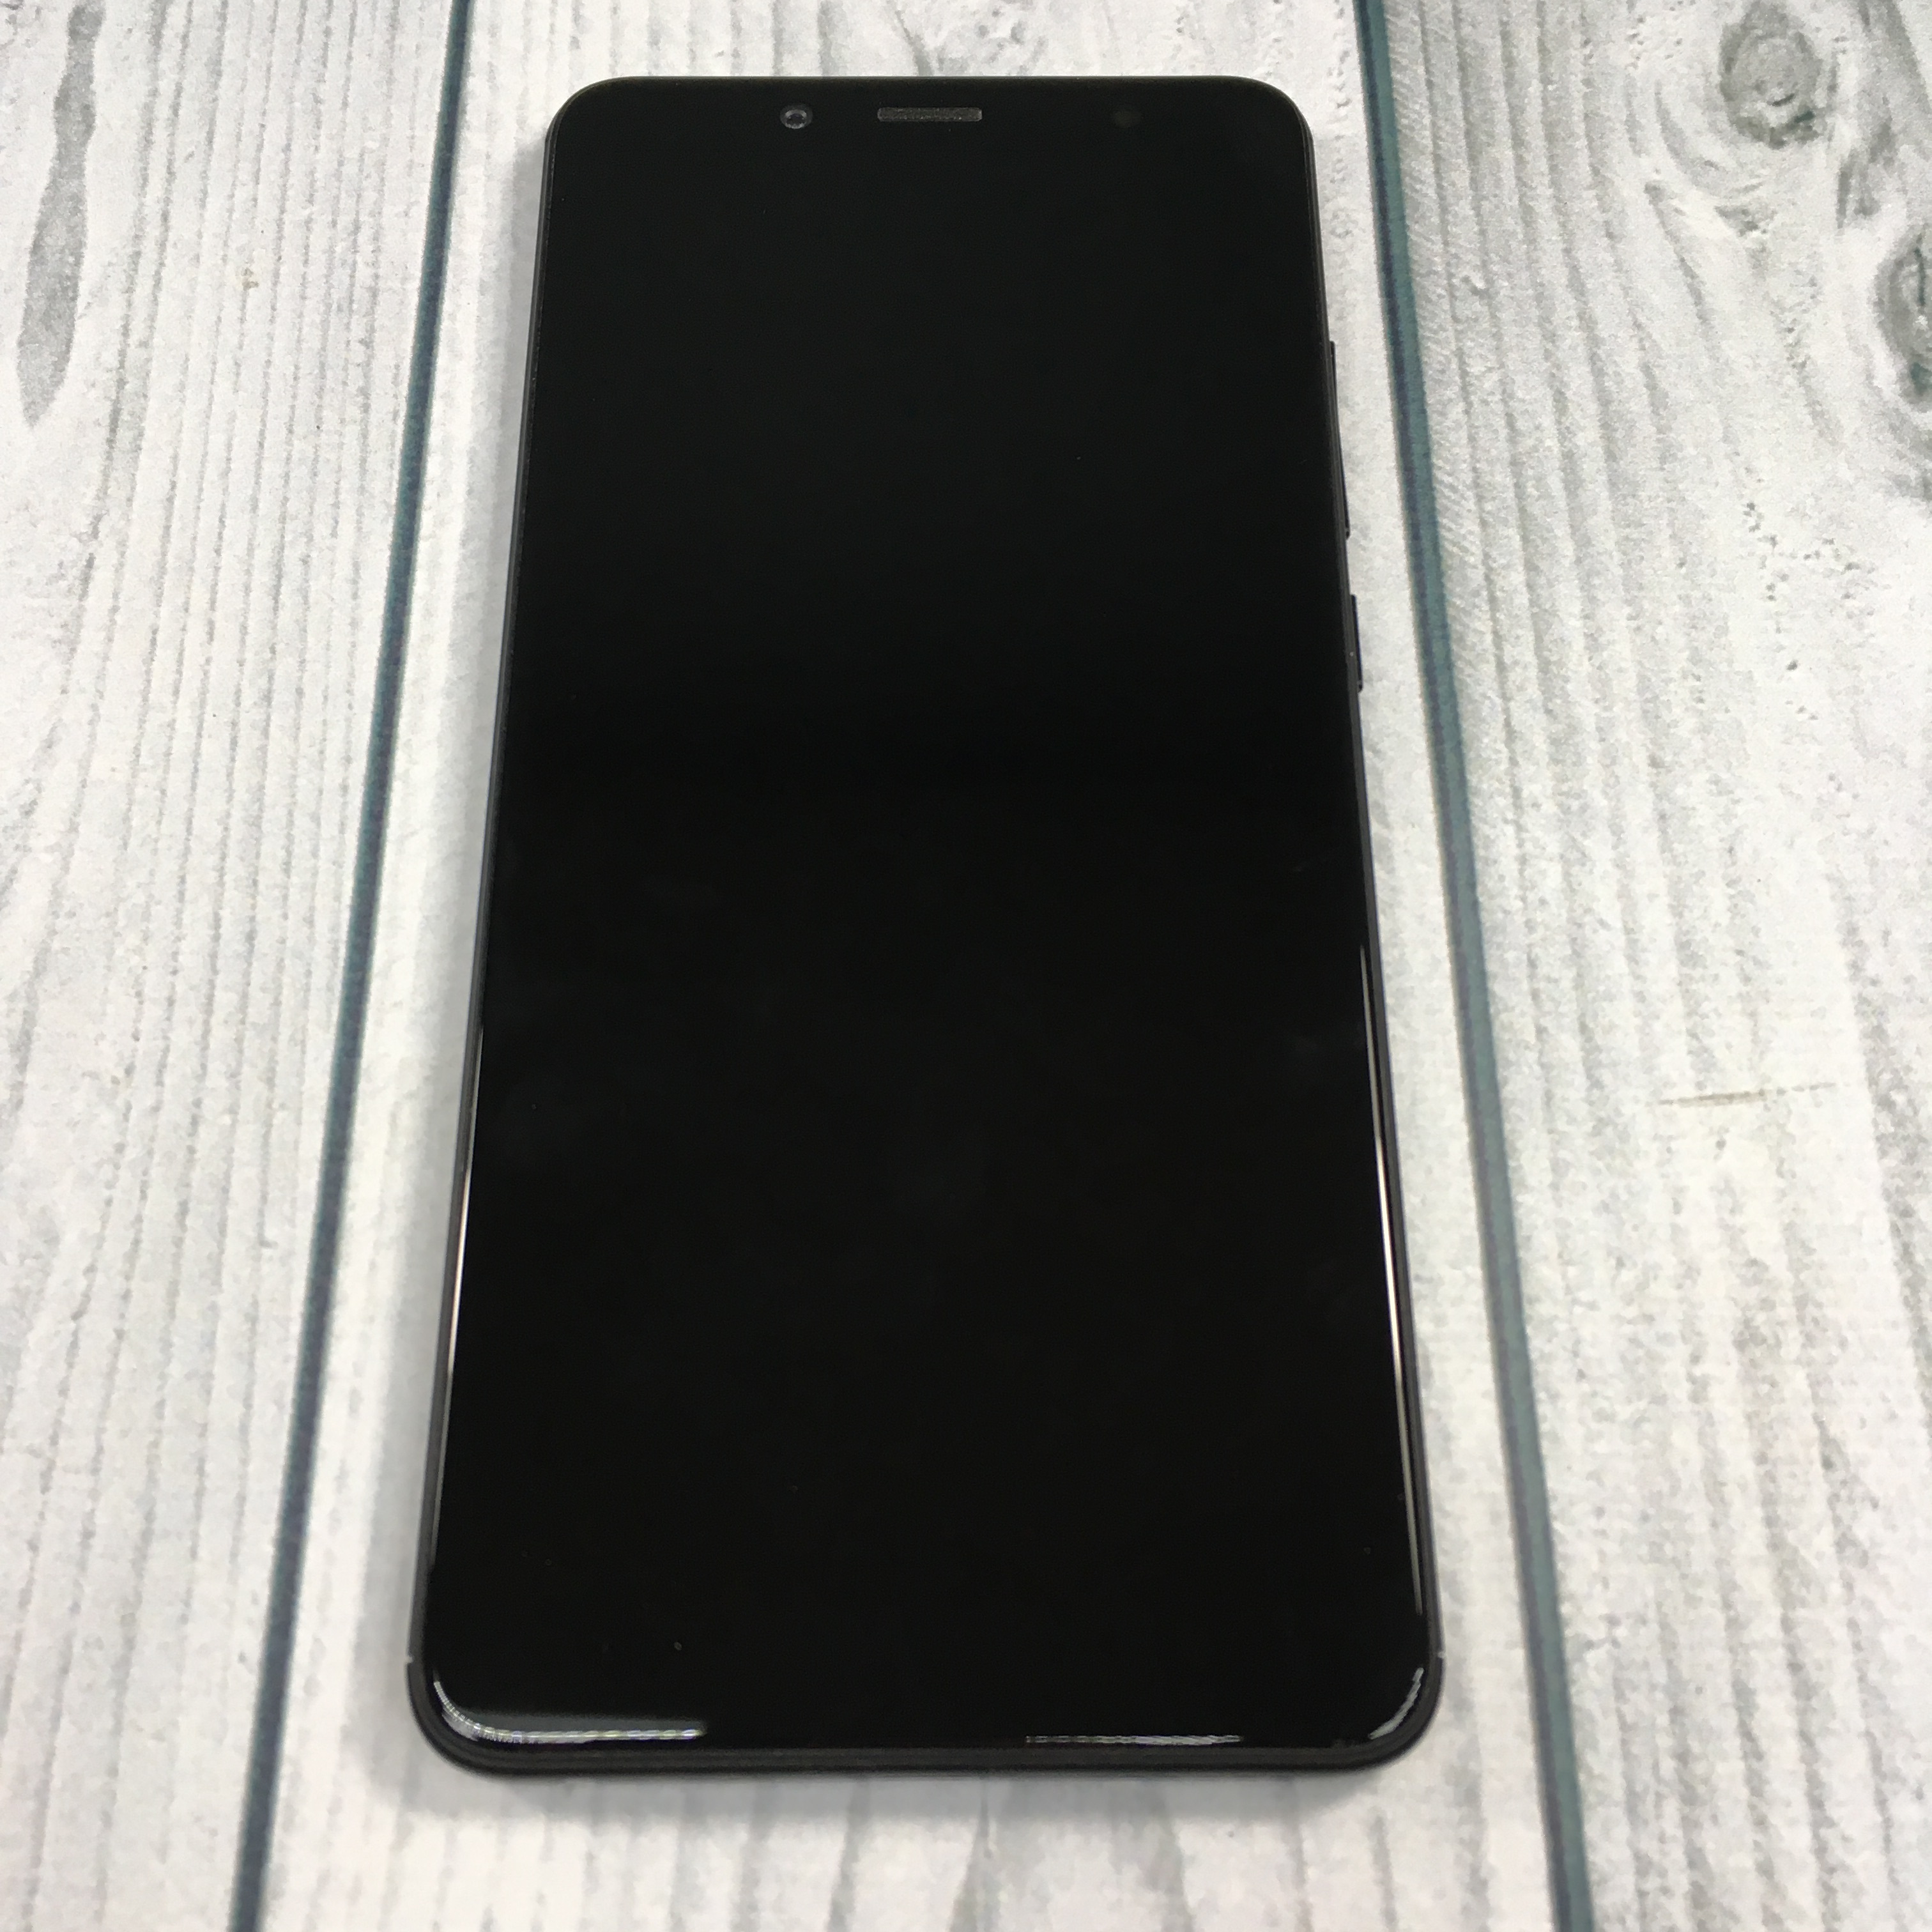 Xiaomi Note 5 4 64gb Black